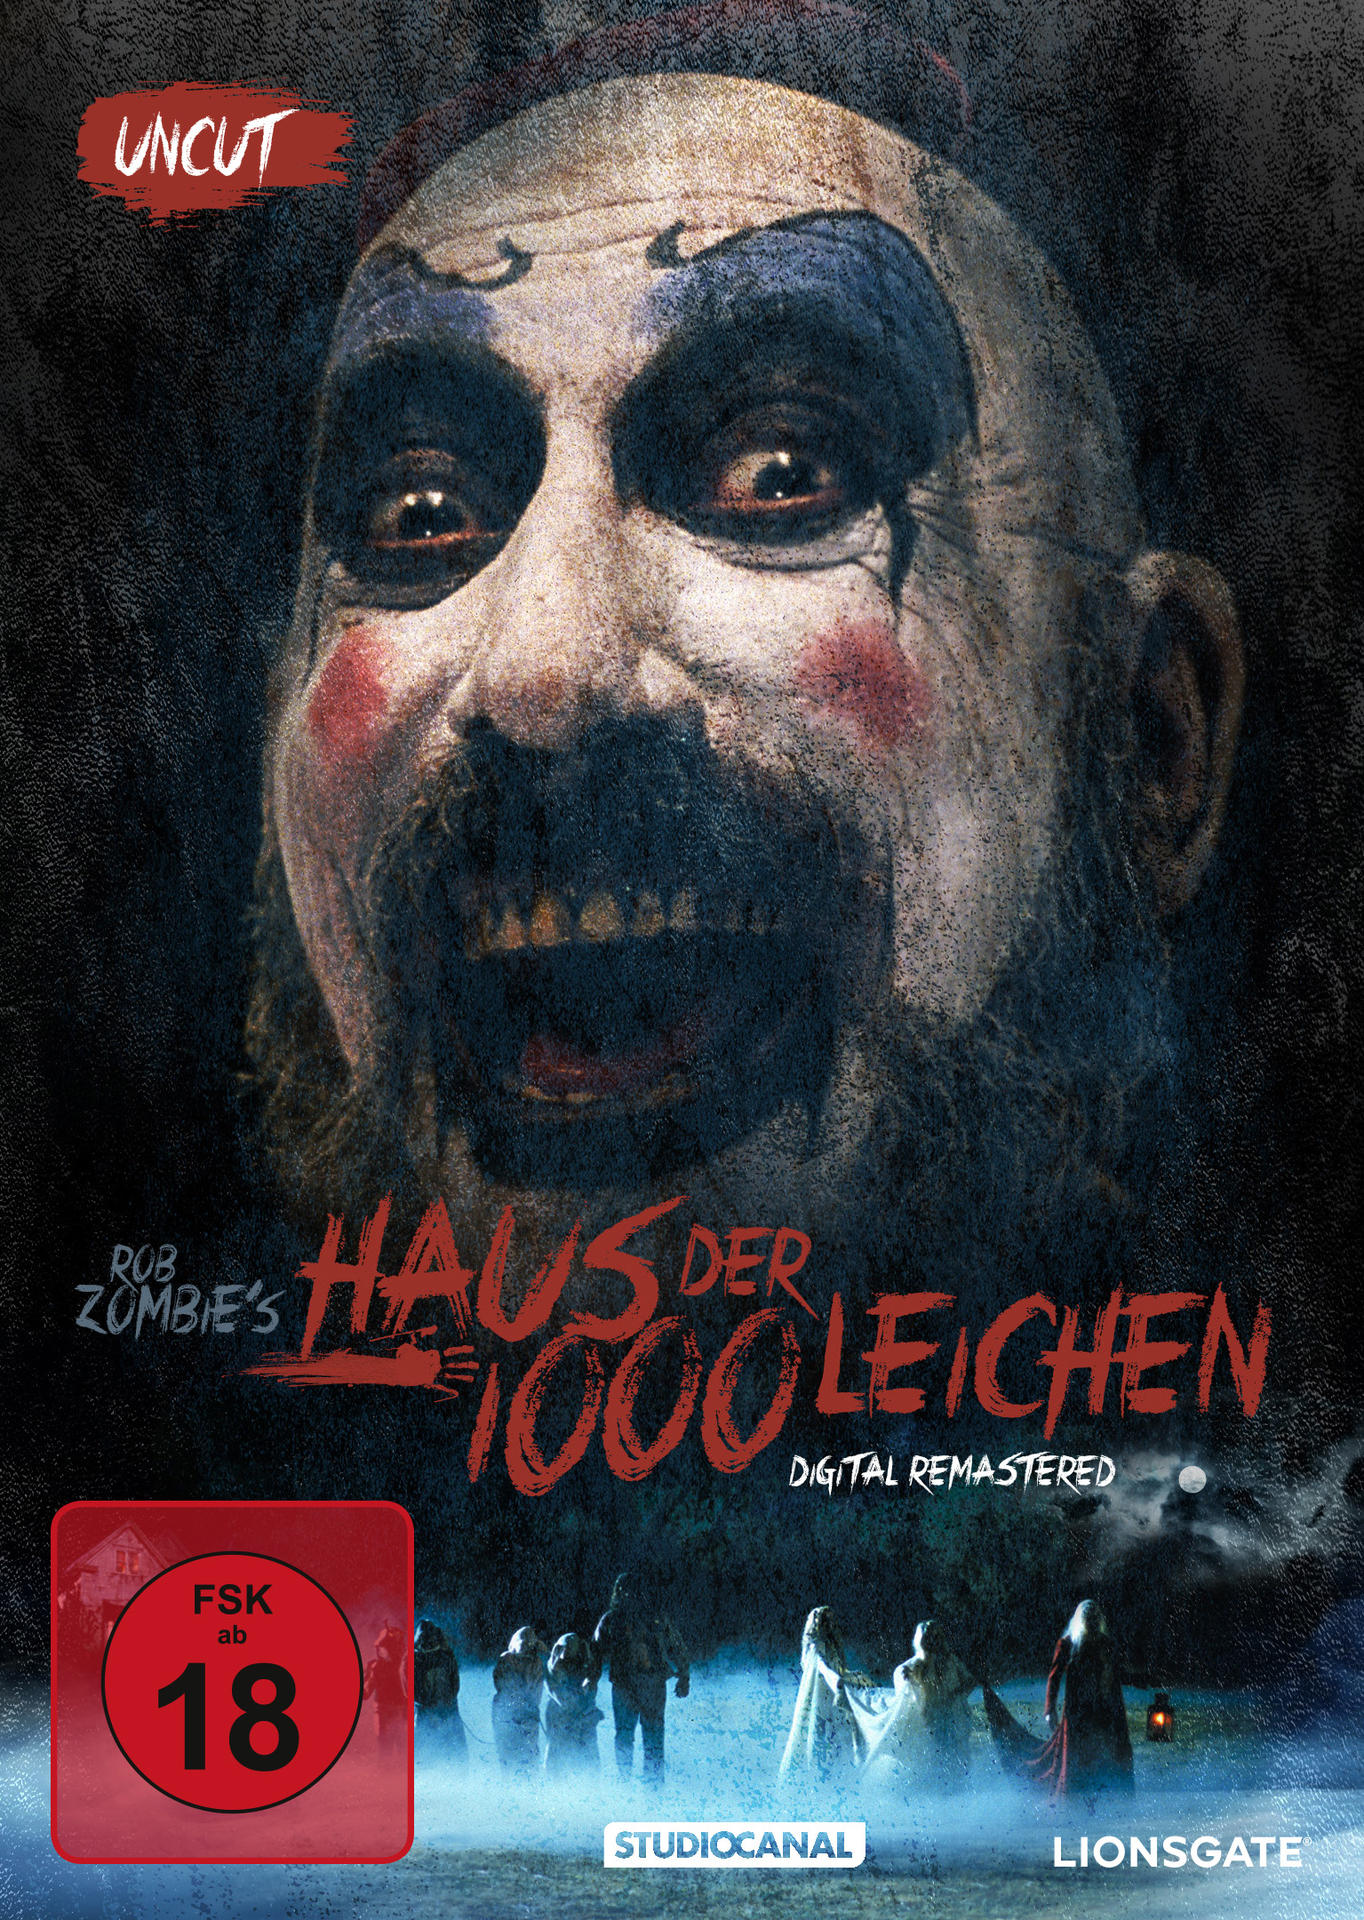 Haus der 1000 Leichen - Uncut DVD Remastered - Digital